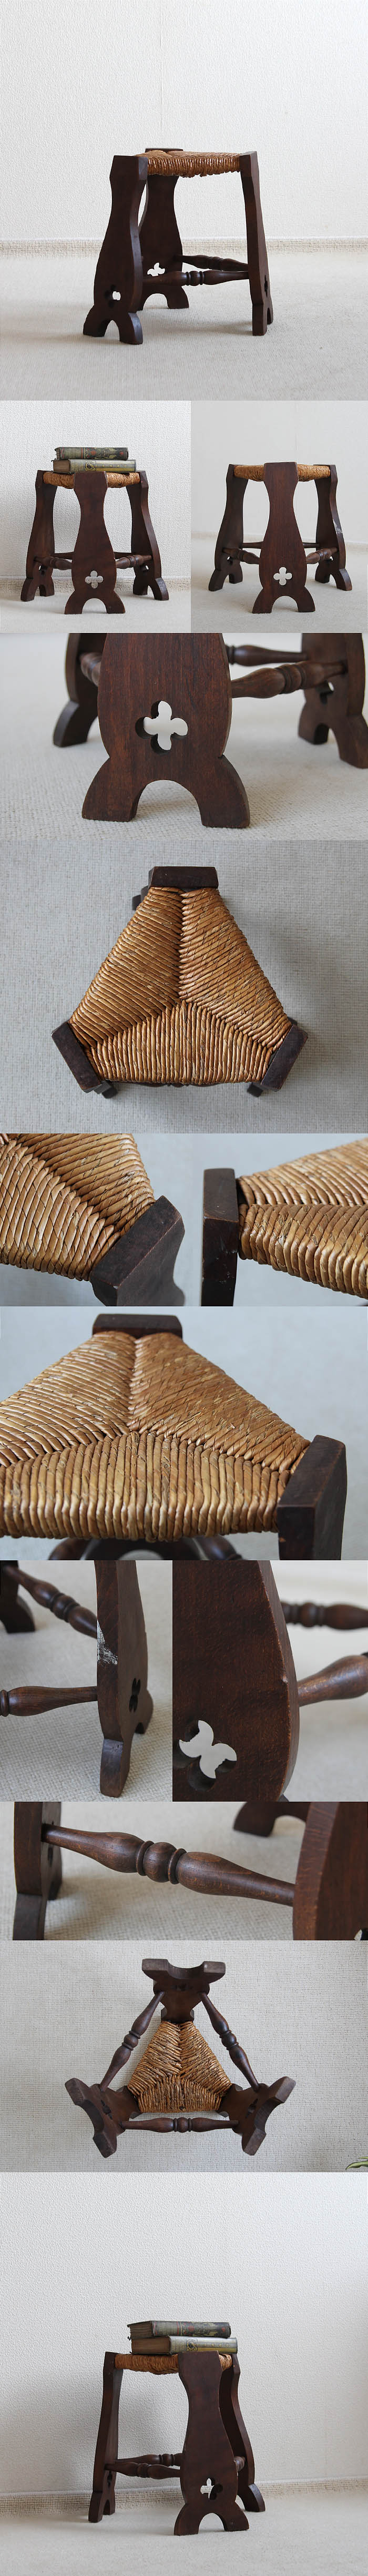 イギリス アンティーク ラッシュシート スツール イグサ 木製椅子 家具「編み込みシート」P-047